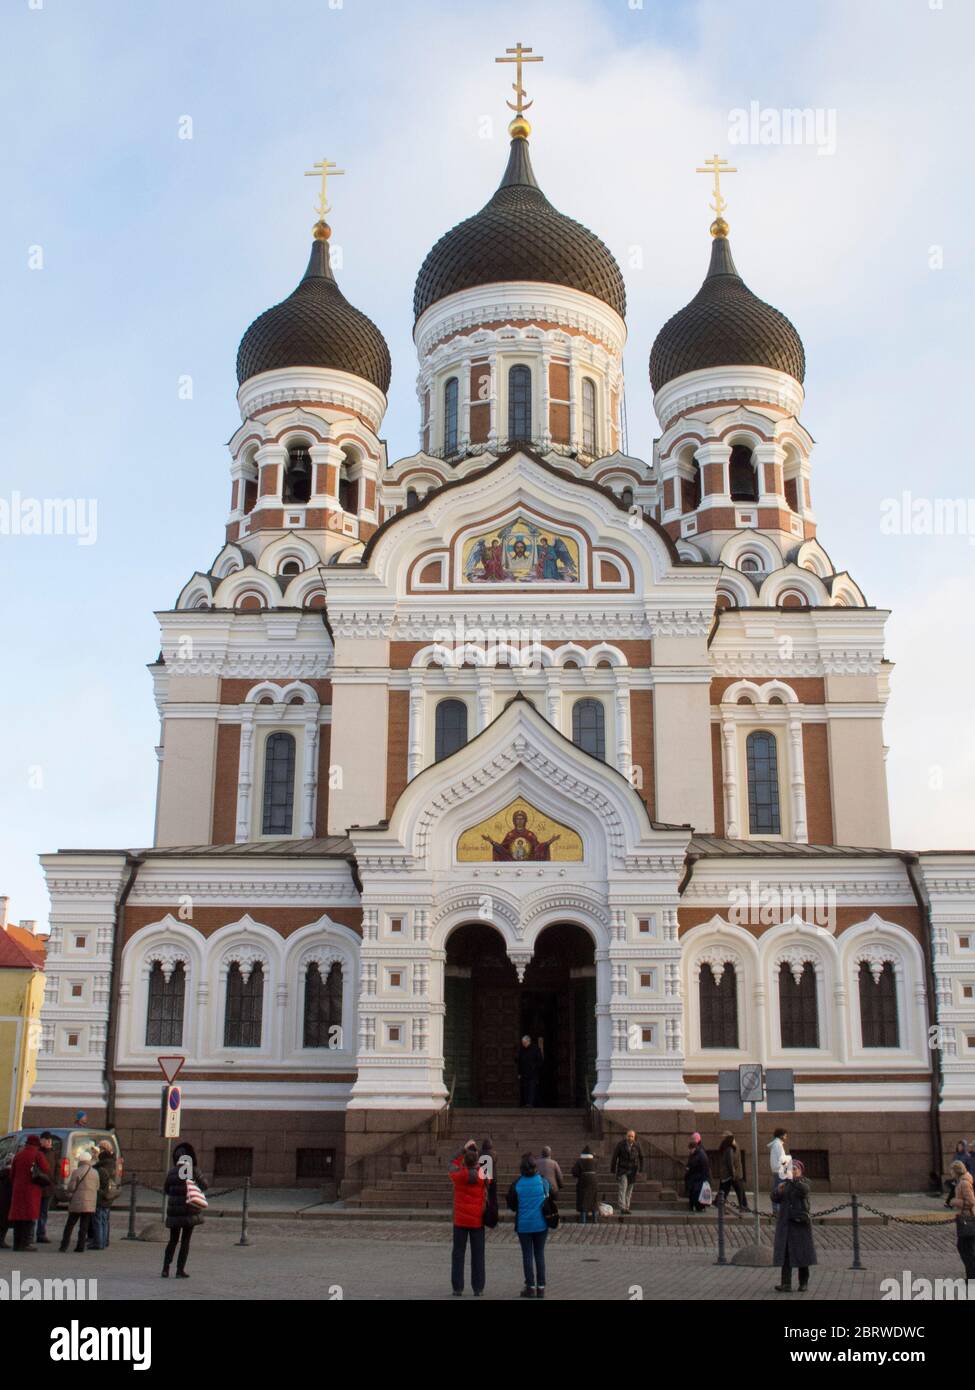 Cathédrale Alexandre Nevsky, une église de style russe Orthadox. Par Mikhail Preobrazhensky. Toompea Tallinn Estonie Banque D'Images